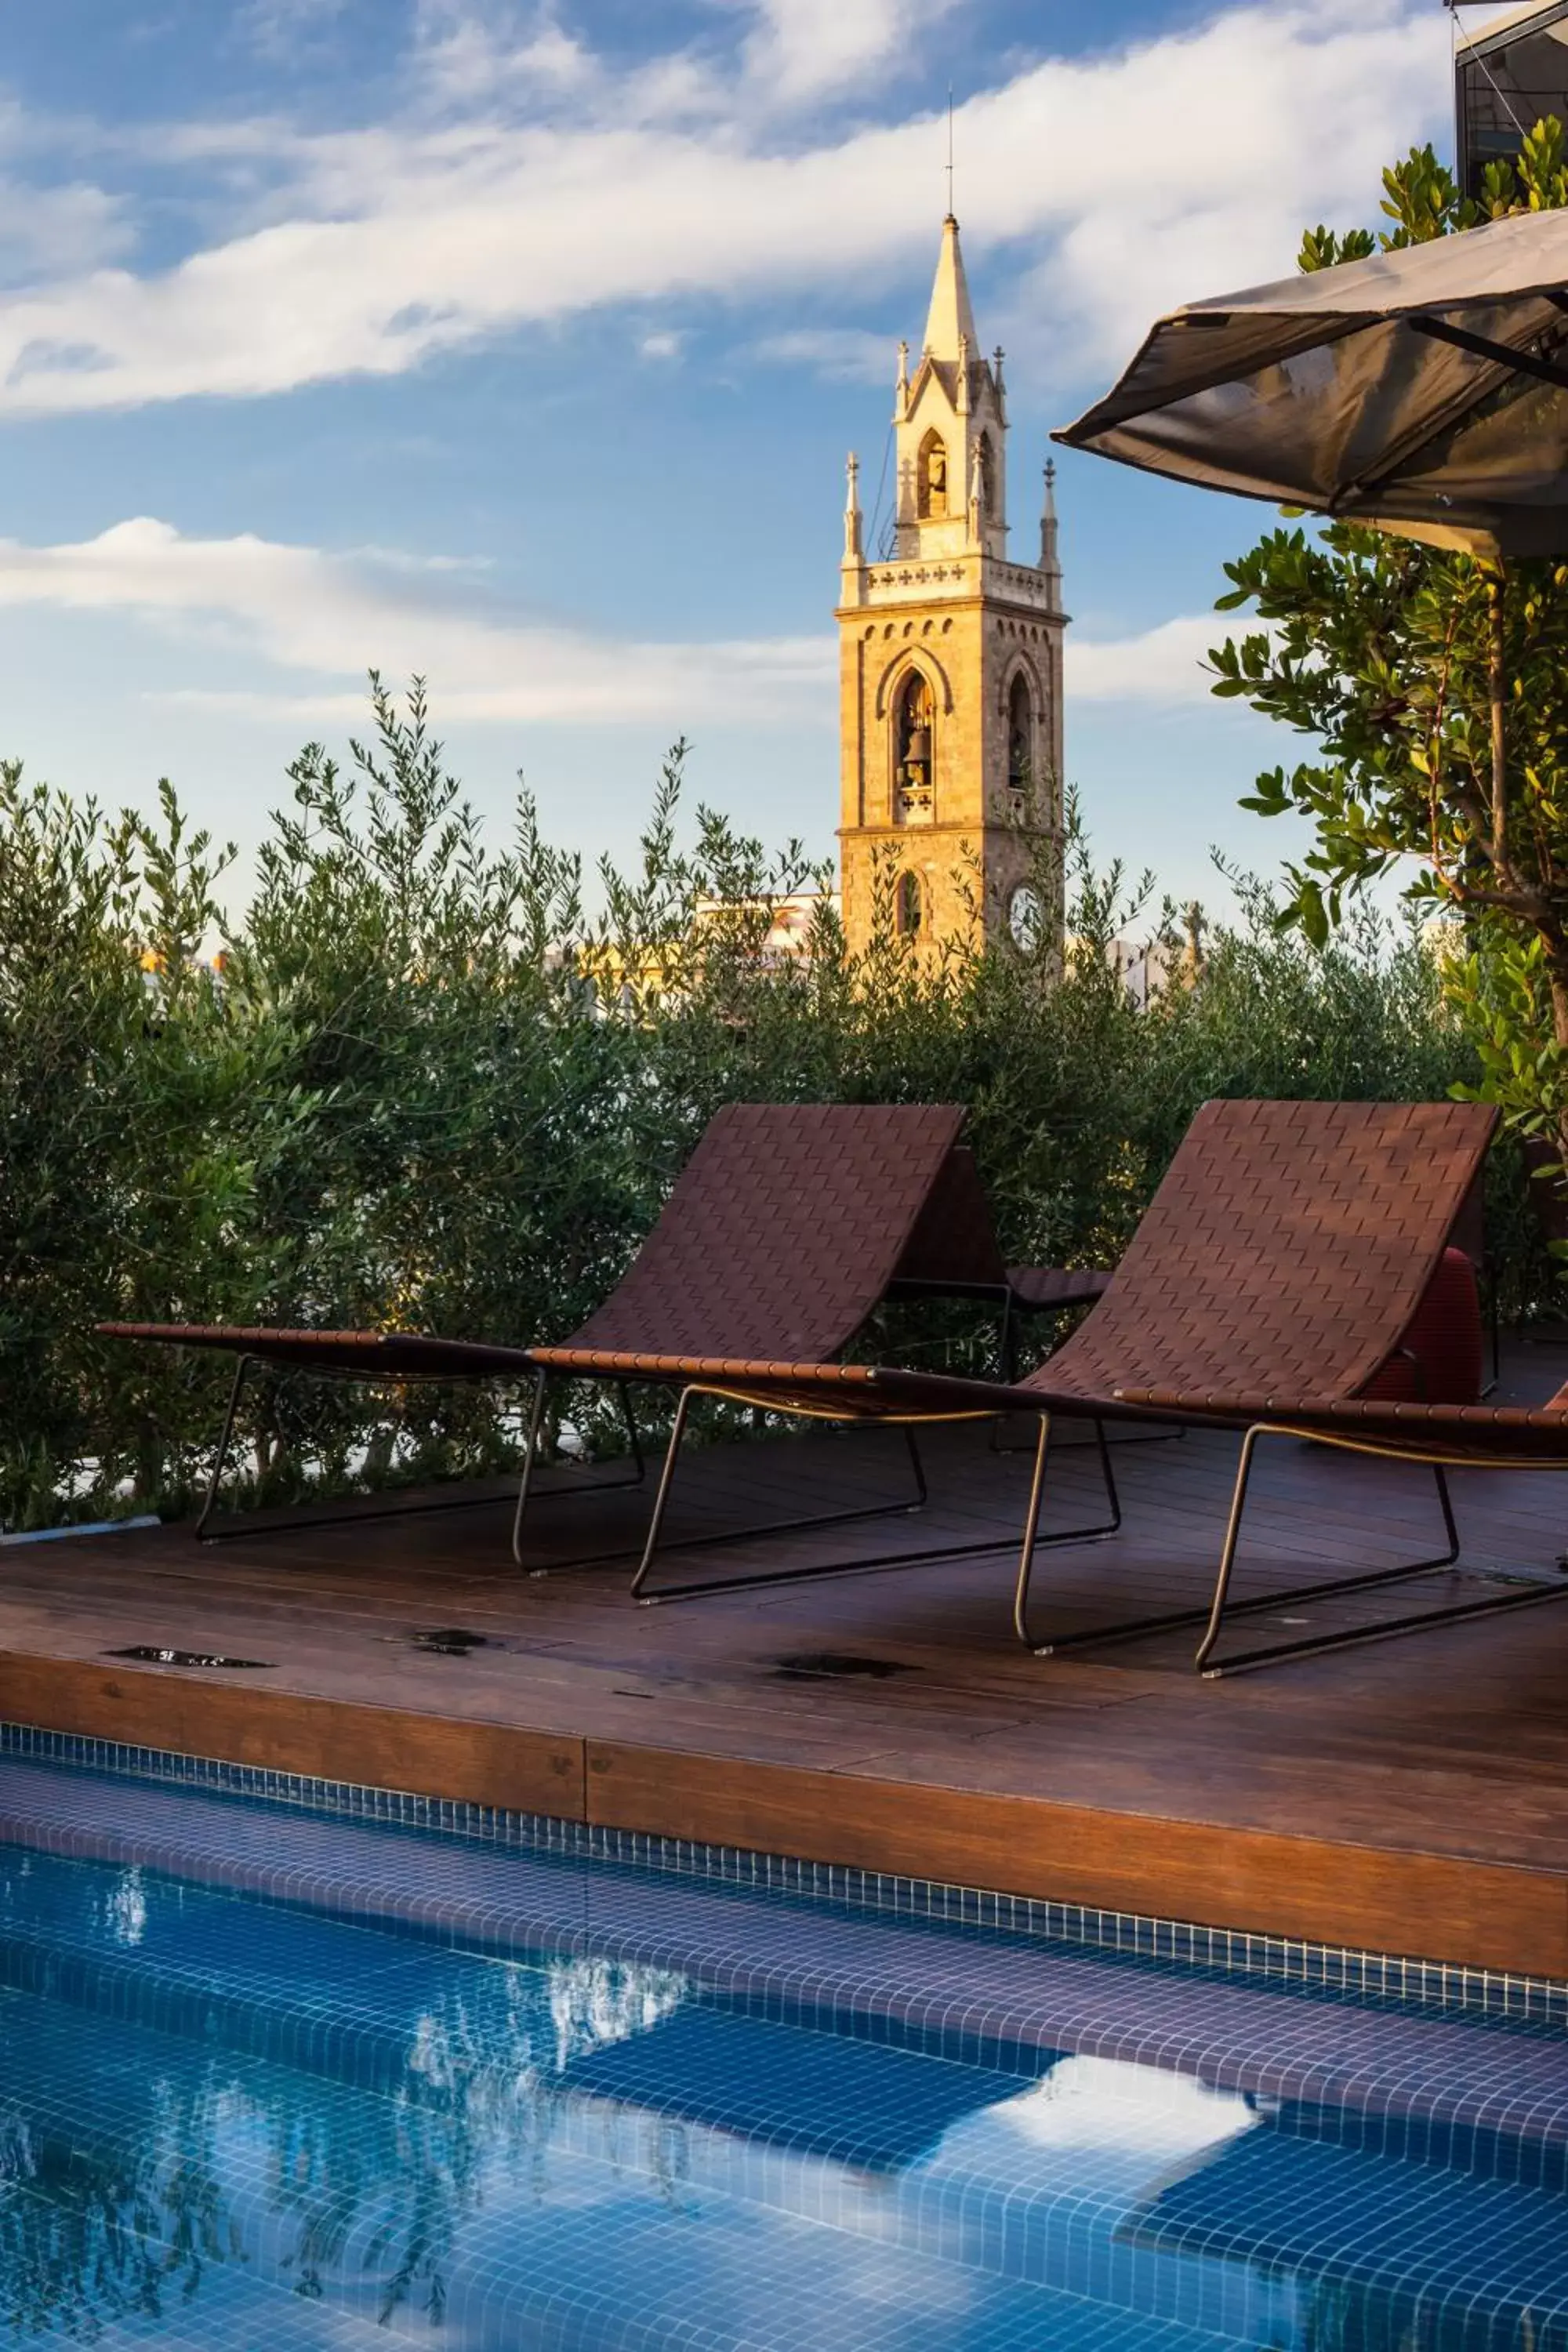 Balcony/Terrace, Swimming Pool in Ocean Drive Barcelona